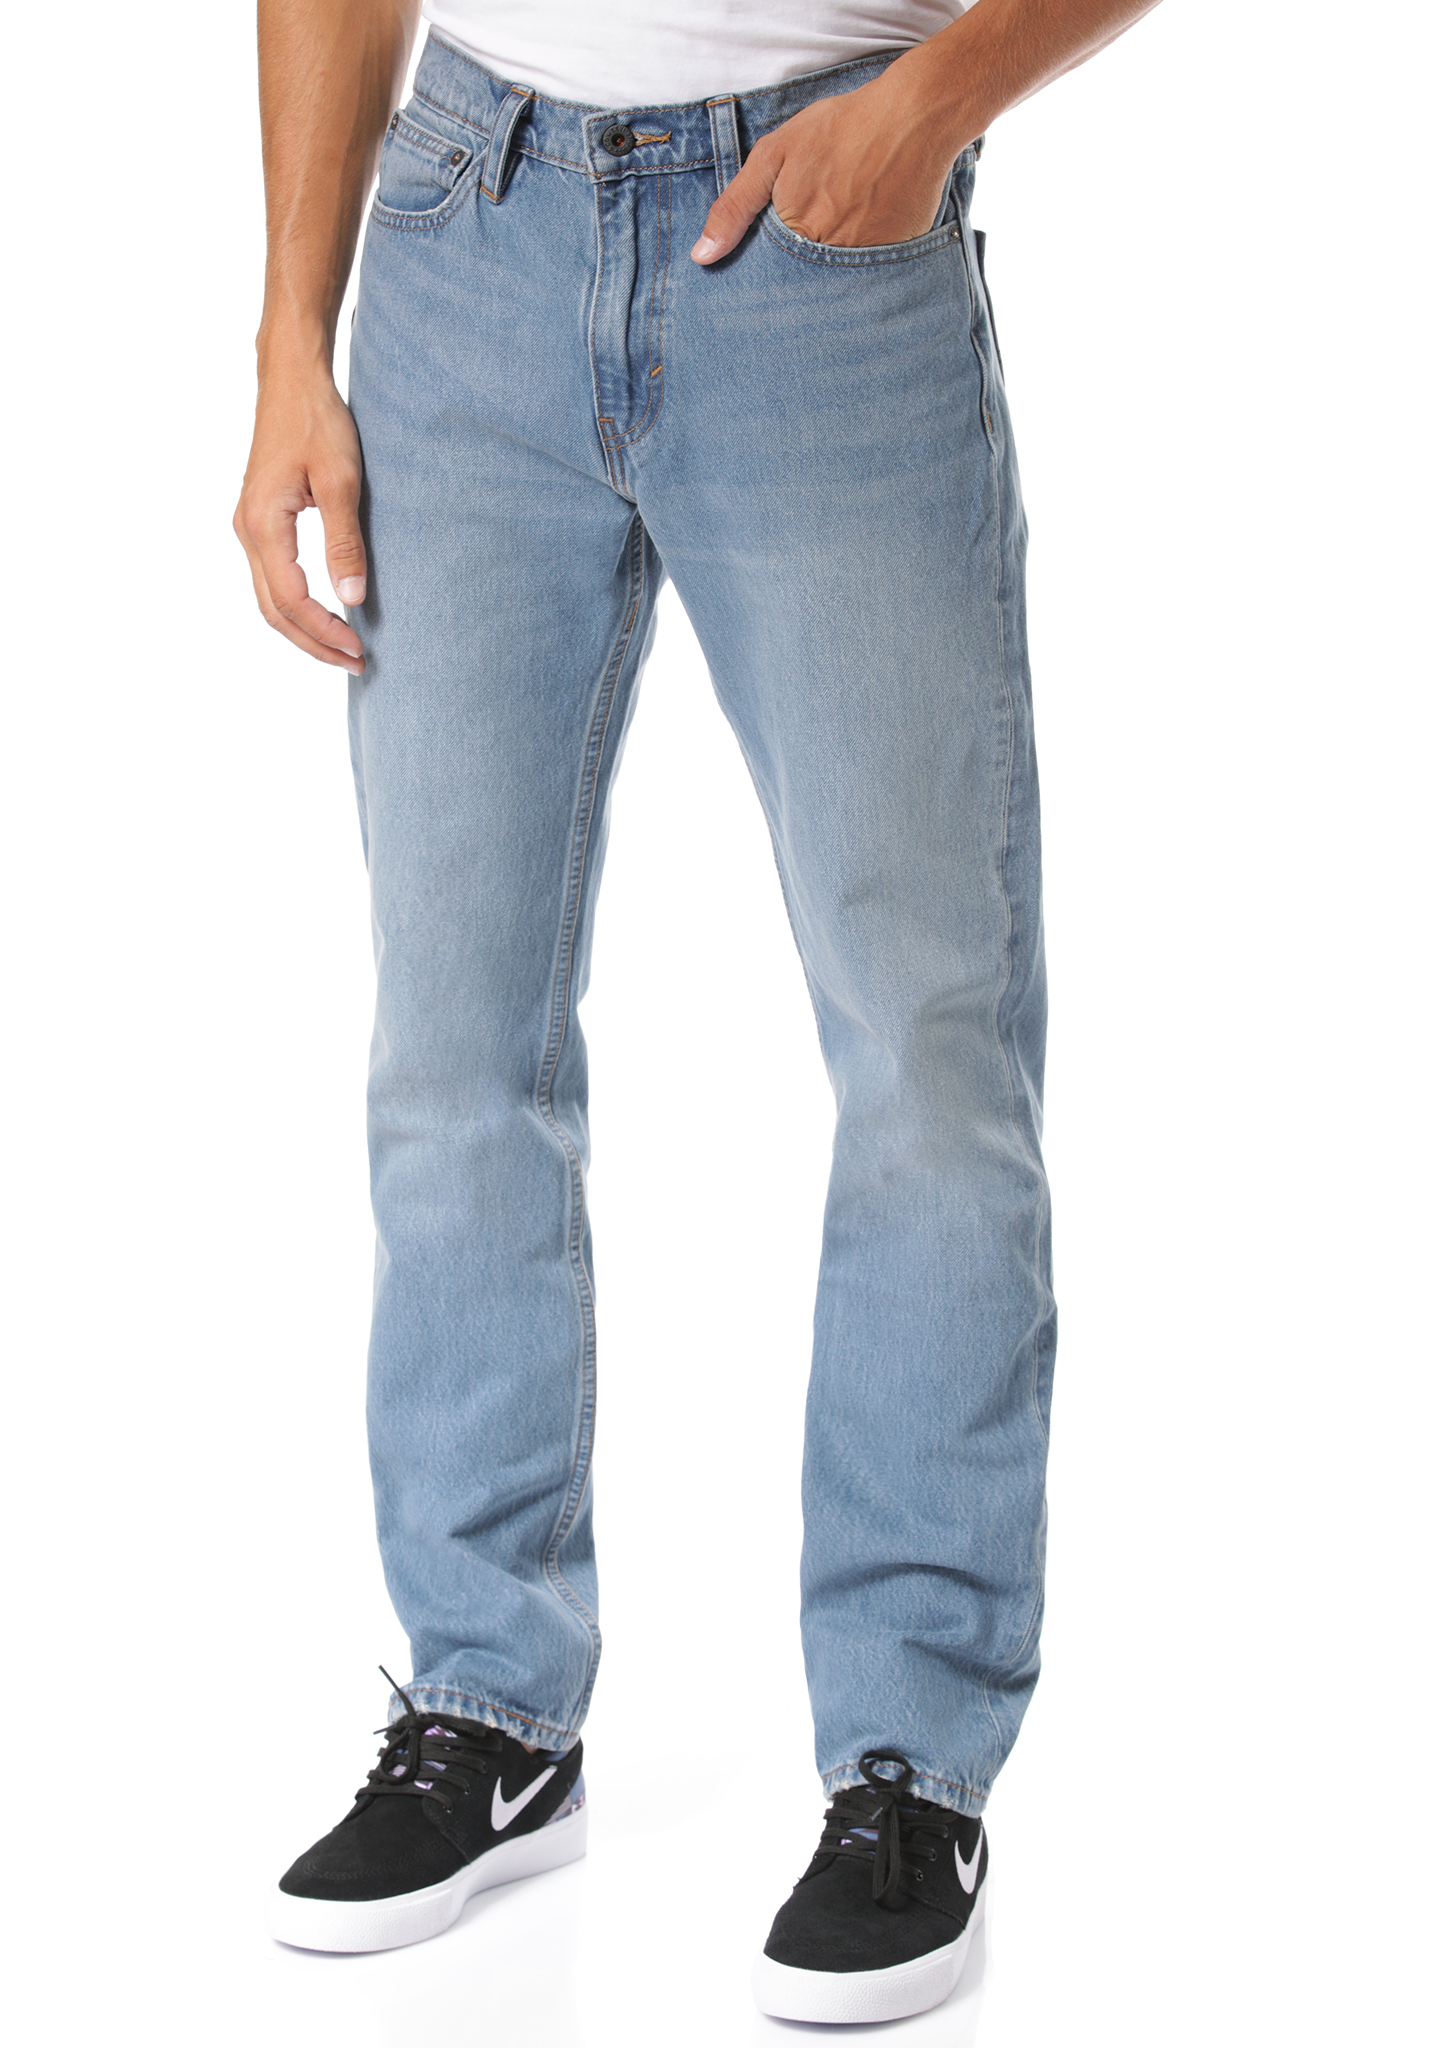 Levis Skate 511 Slim 5 Pocket SE Jeans jeans 36/34